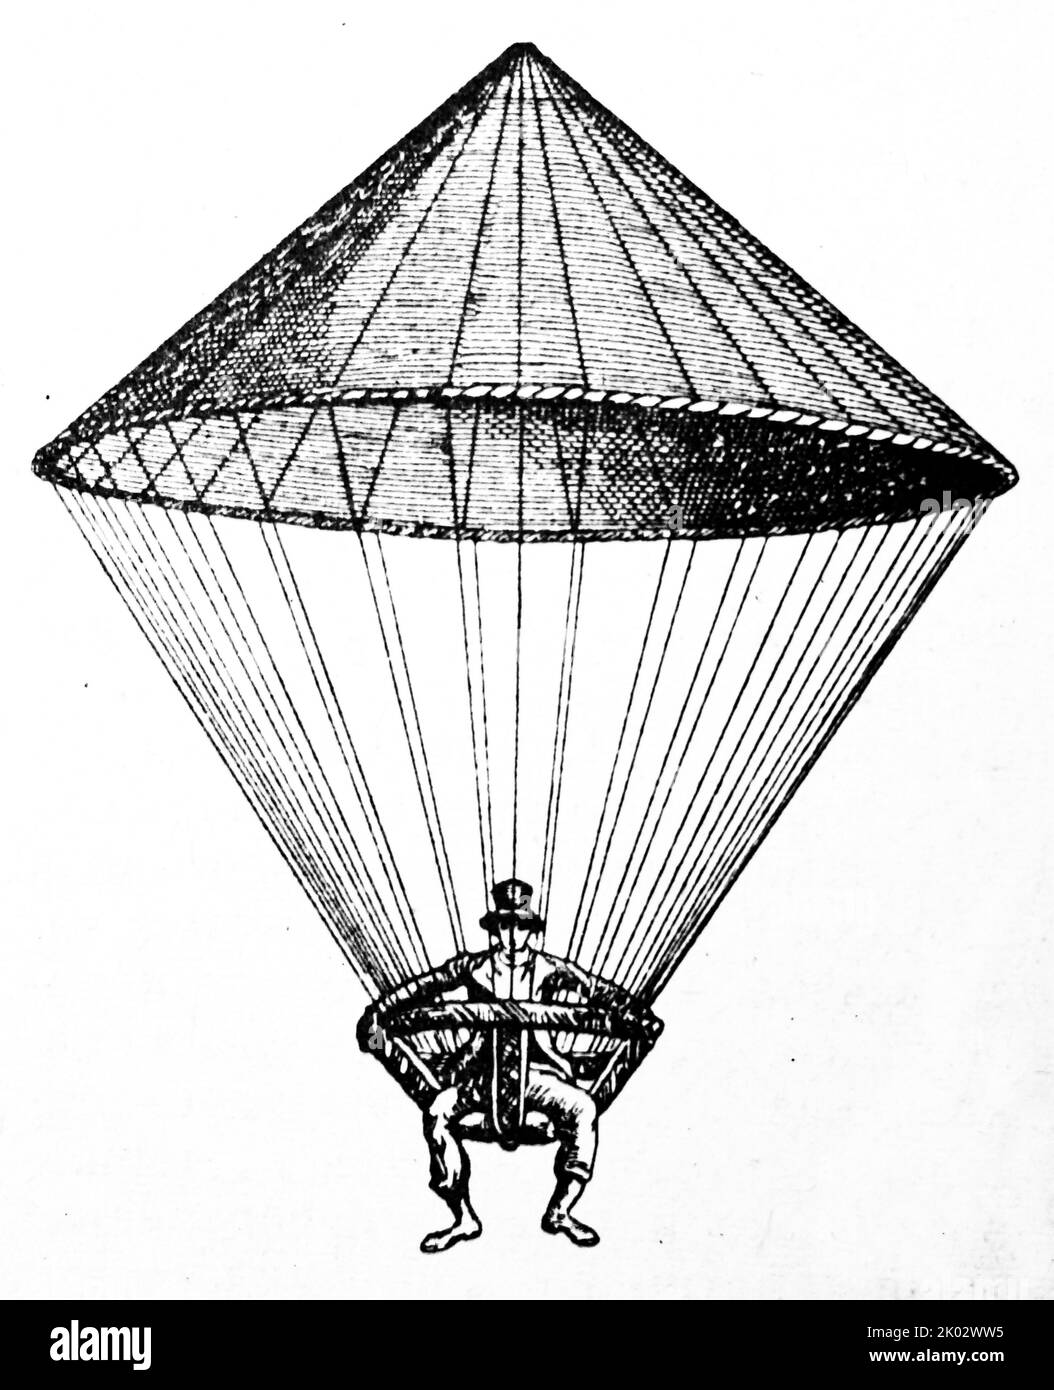 Parachute inventé par le physicien français Lenormand. Louis-Sébastien Lenormand (25 mai 1757 - 4 avril 1837) était un chimiste, physicien, inventeur français et pionnier du parachutisme Banque D'Images